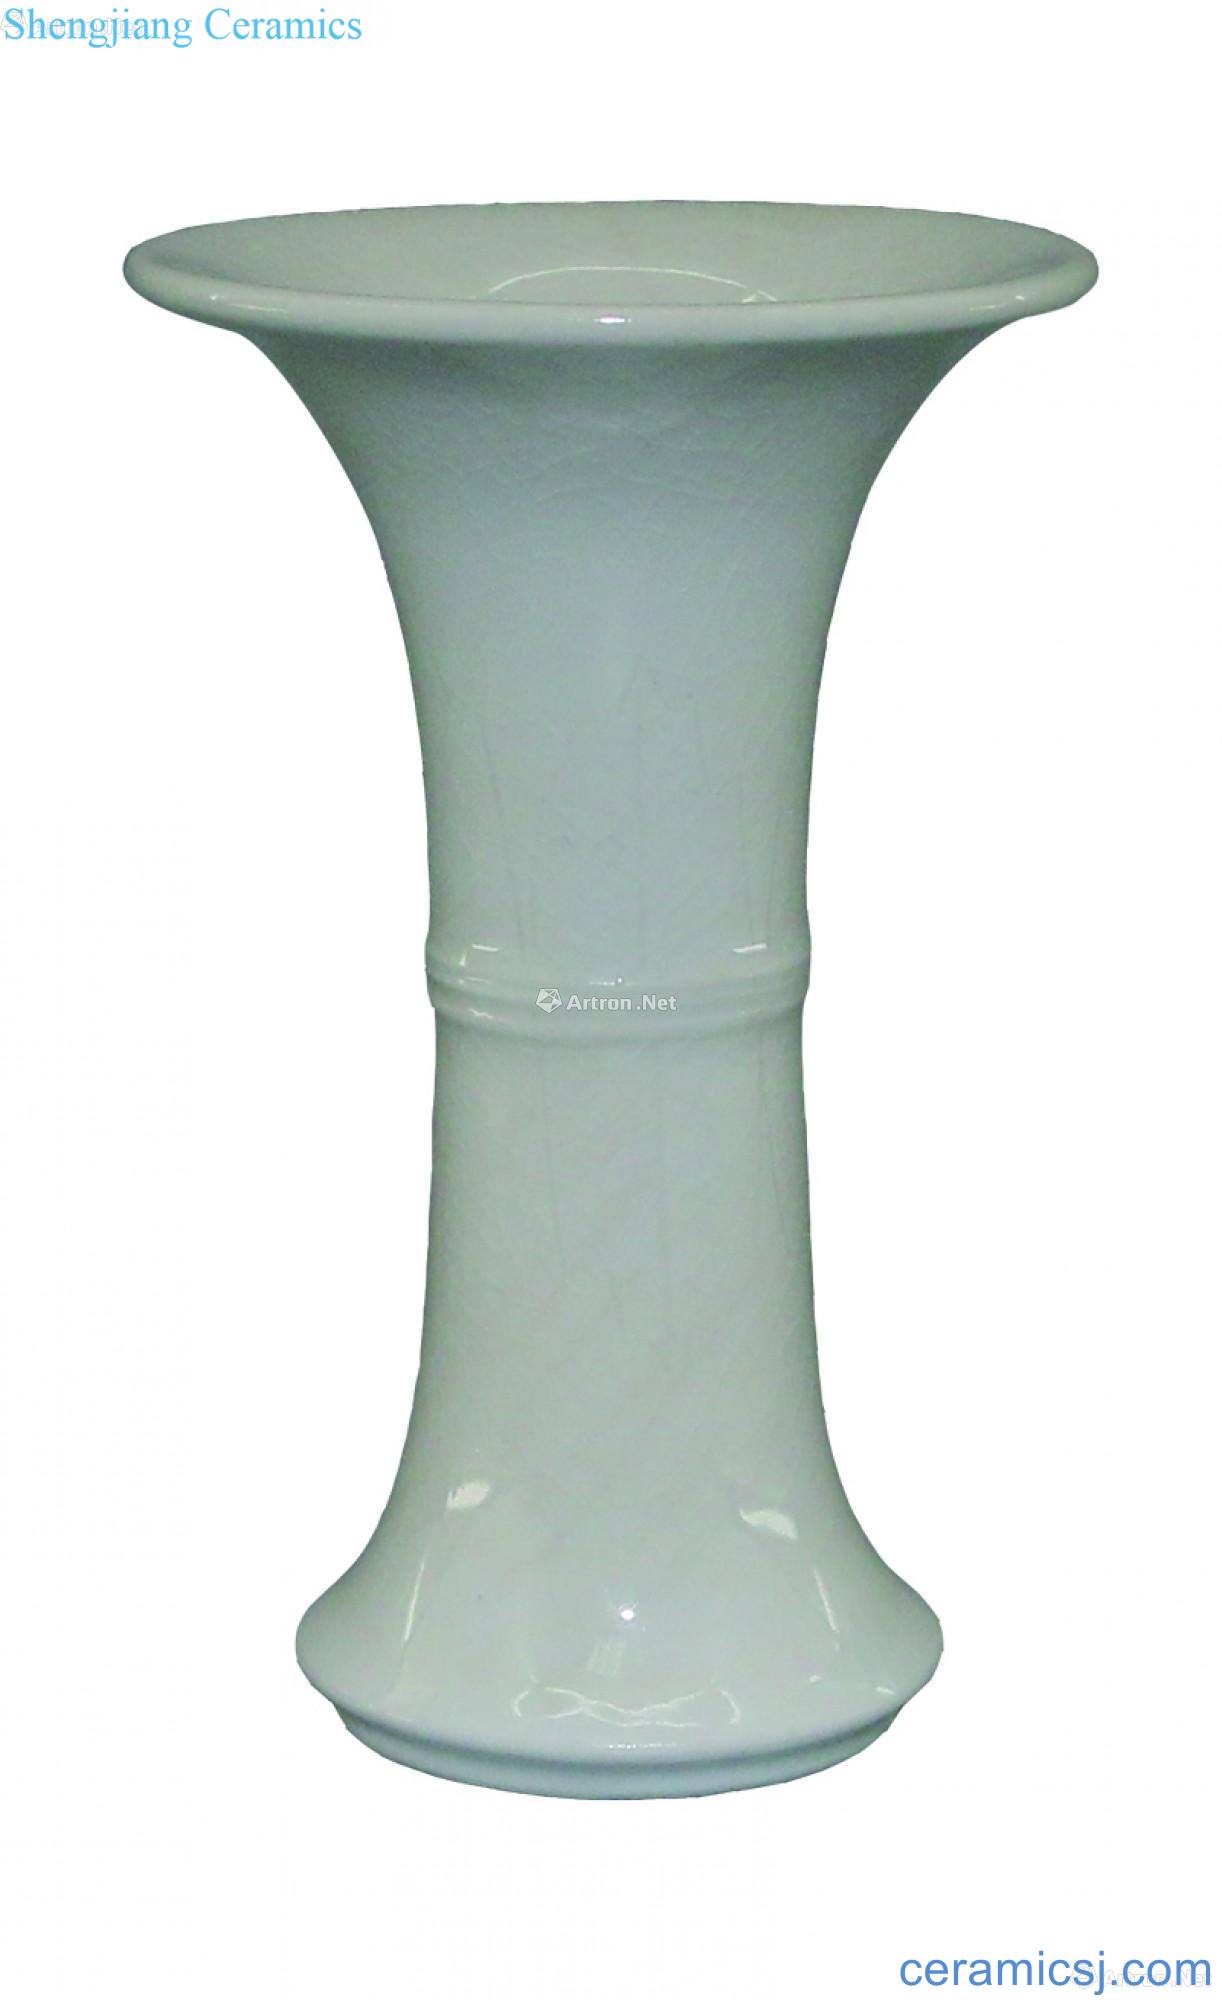 Zhangzhou kiln flower vase with